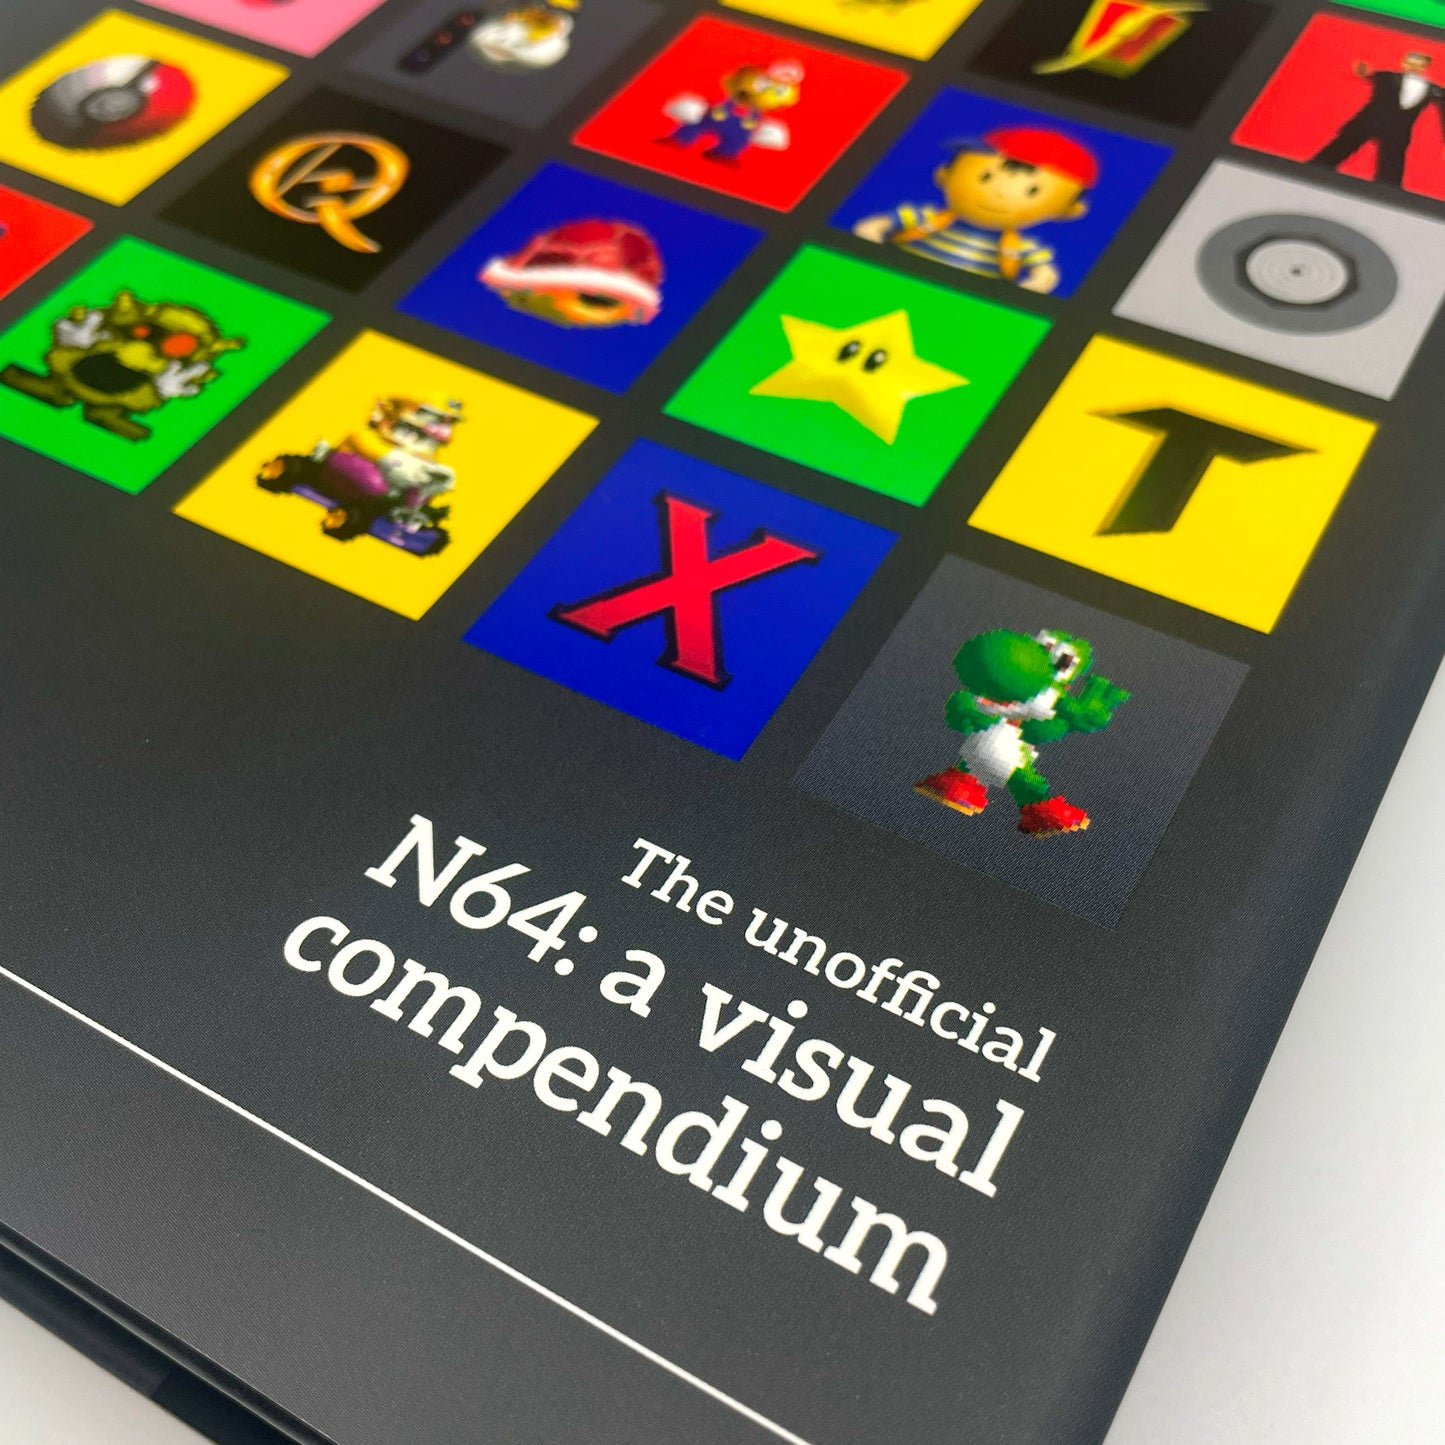 N64: A Visual Compendium